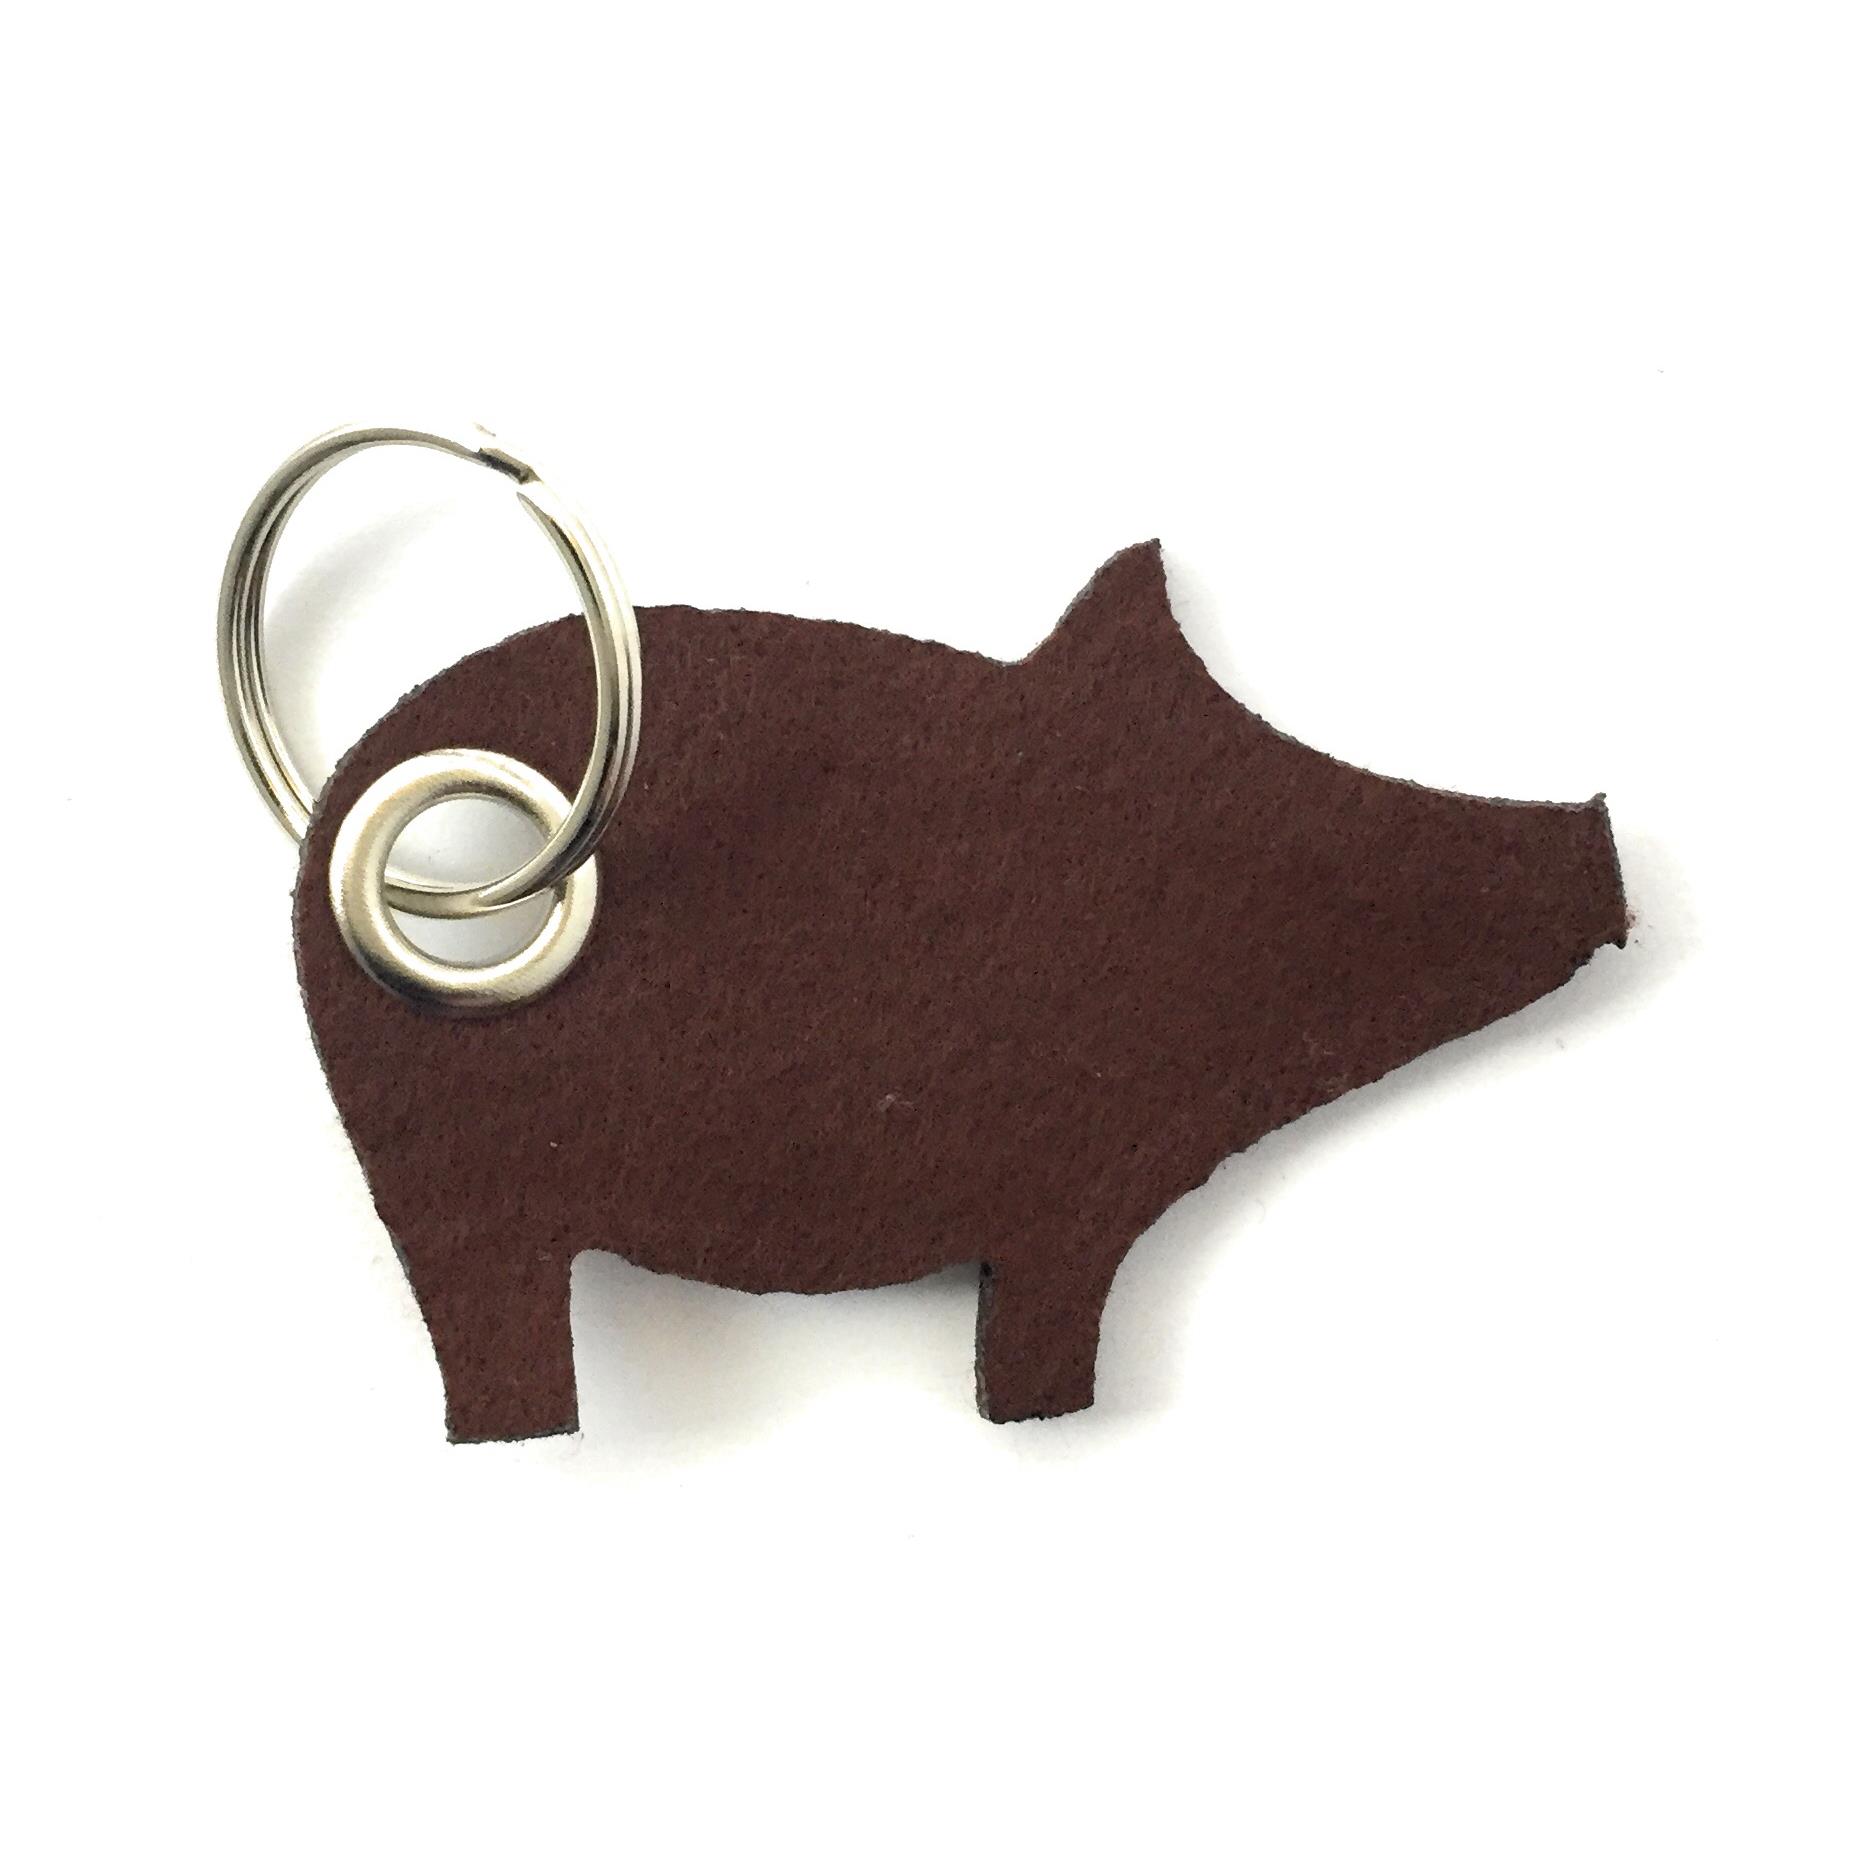 Glücks-Schwein - Filz-Schlüsselanhänger in braun